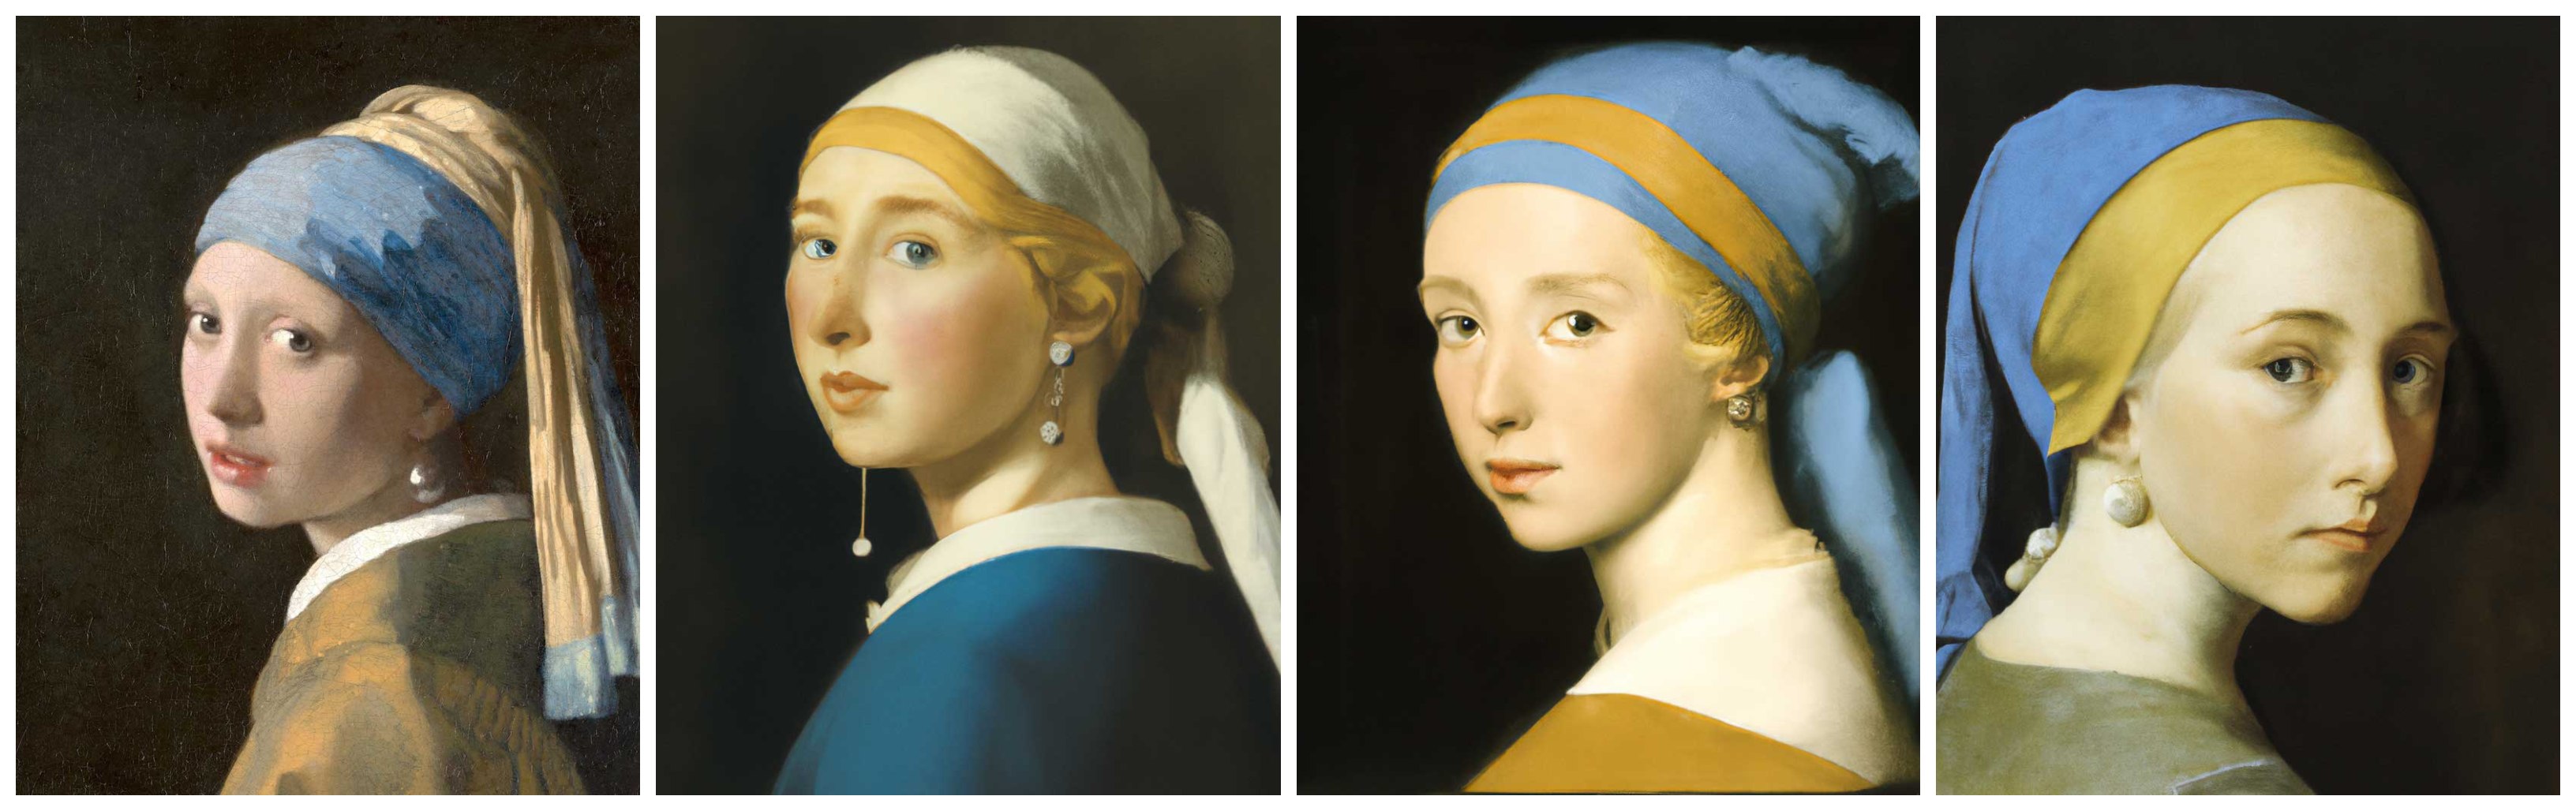 페르메이르의 진주 귀걸이를 한 소녀 원본(왼쪽)과 달리2의 모작 이미지들